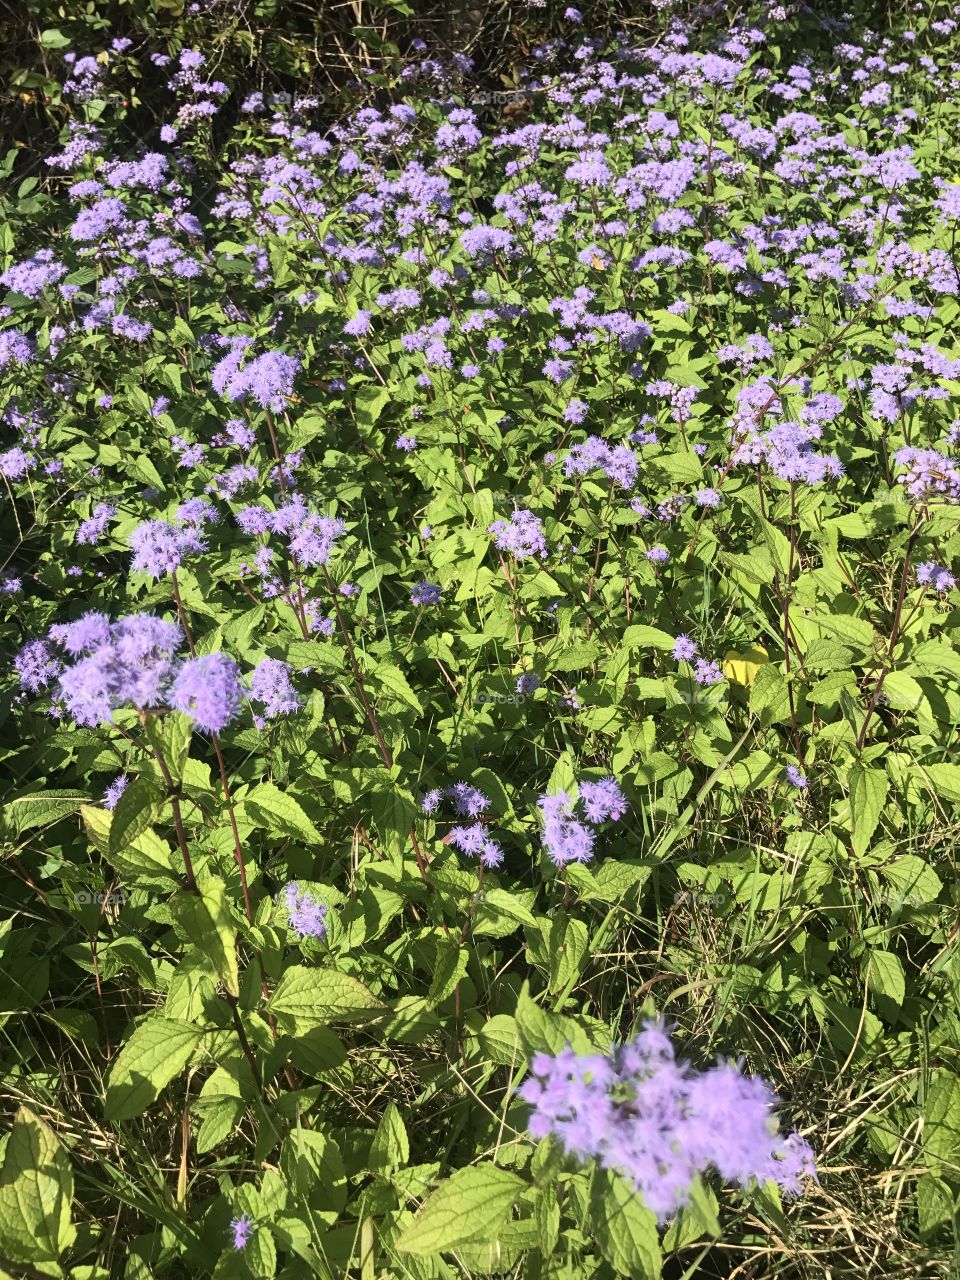 Purple flowers in direct sunlight.  